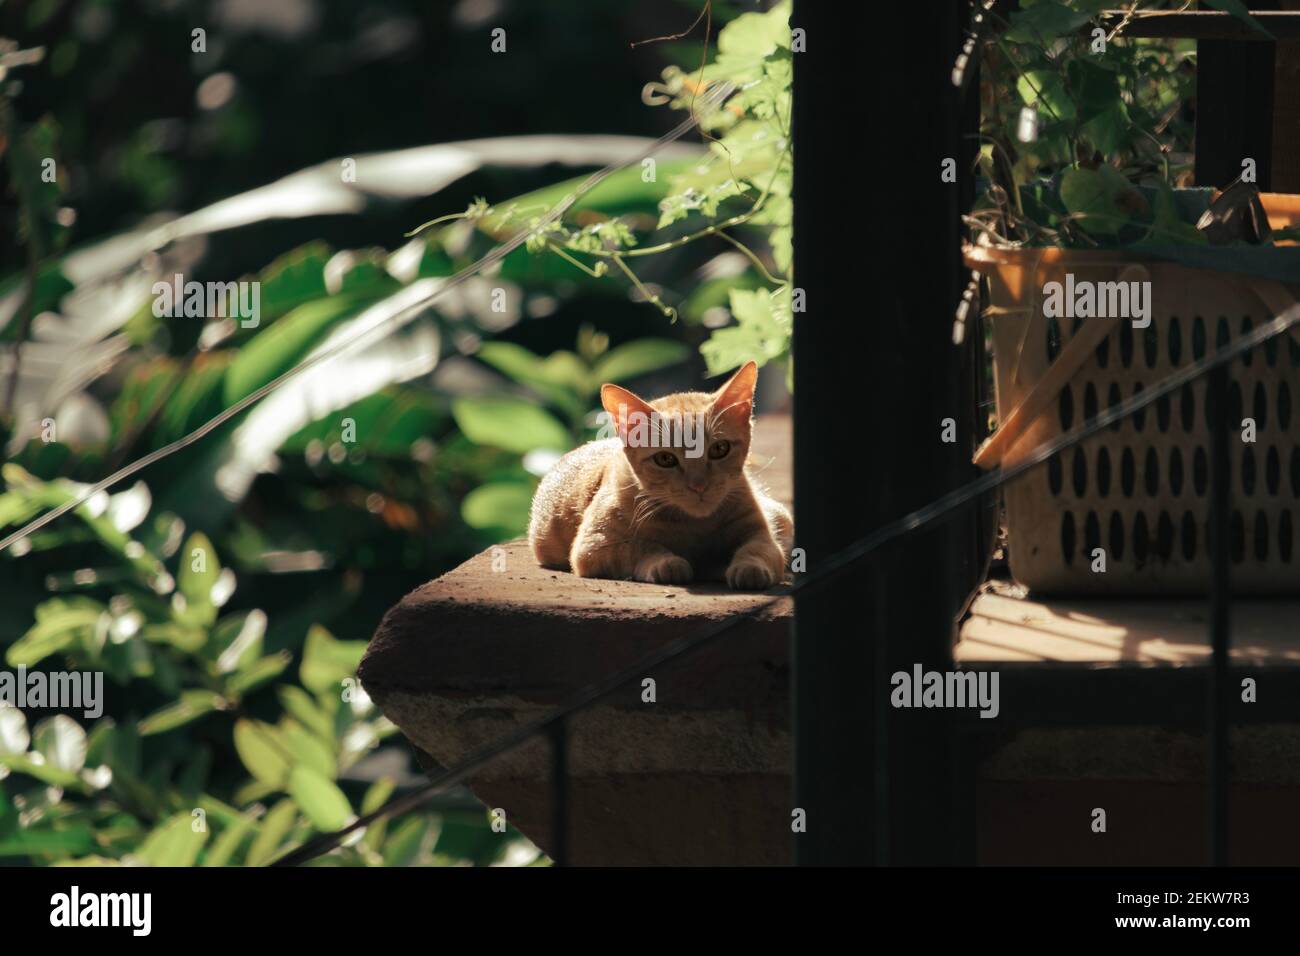 A cat sunbathing in a garden Stock Photo